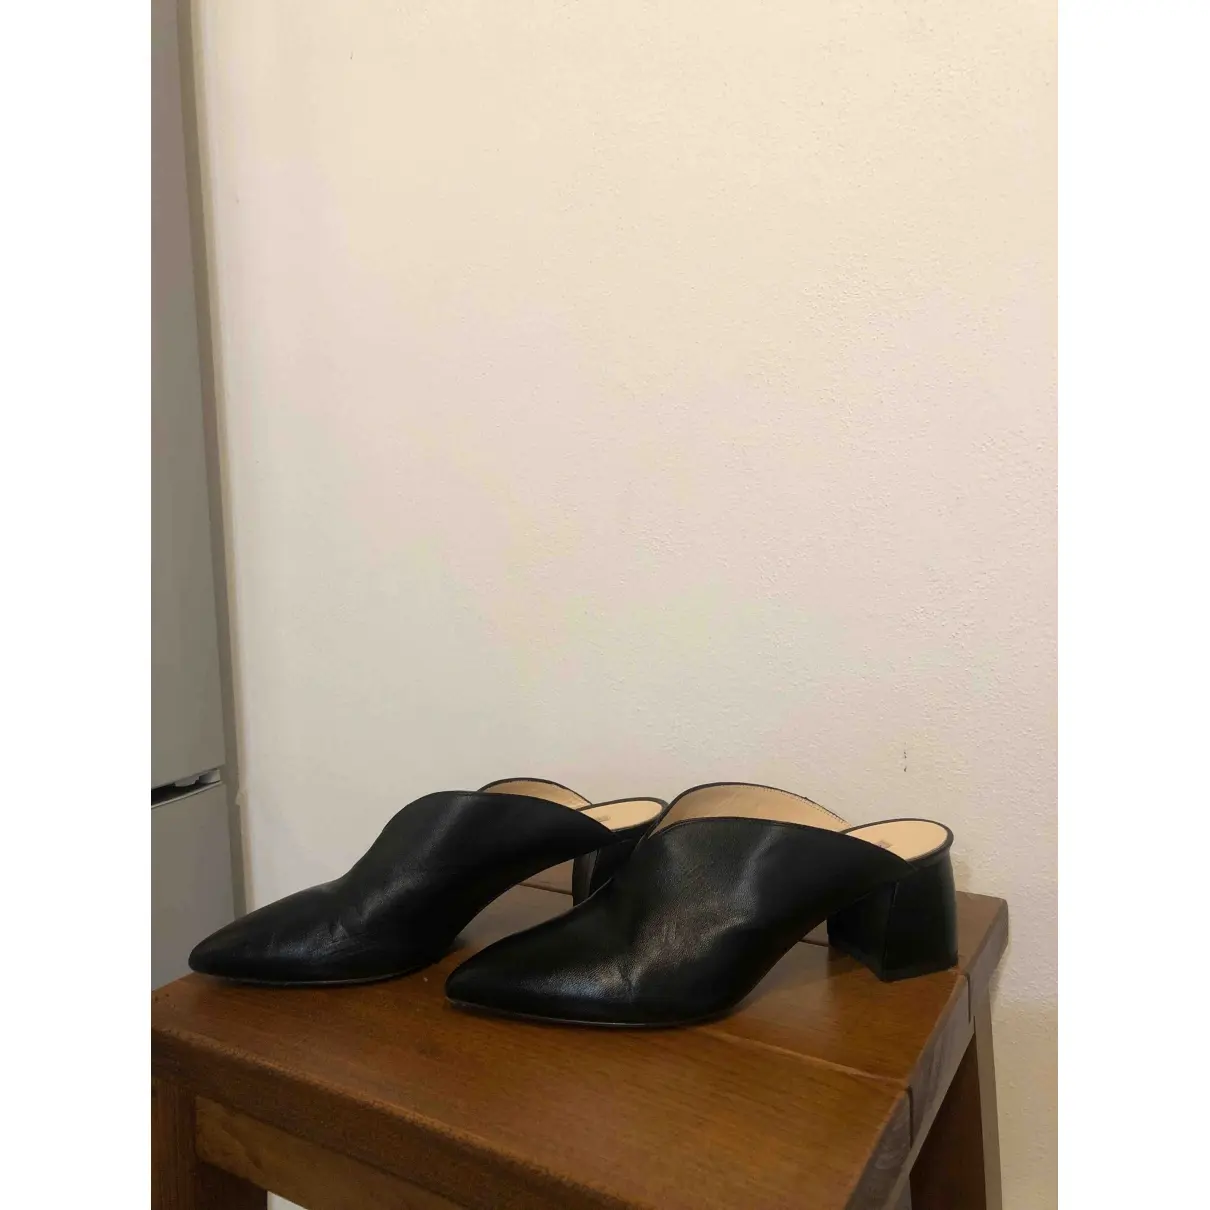 Chiarini Bologna Leather sandals for sale